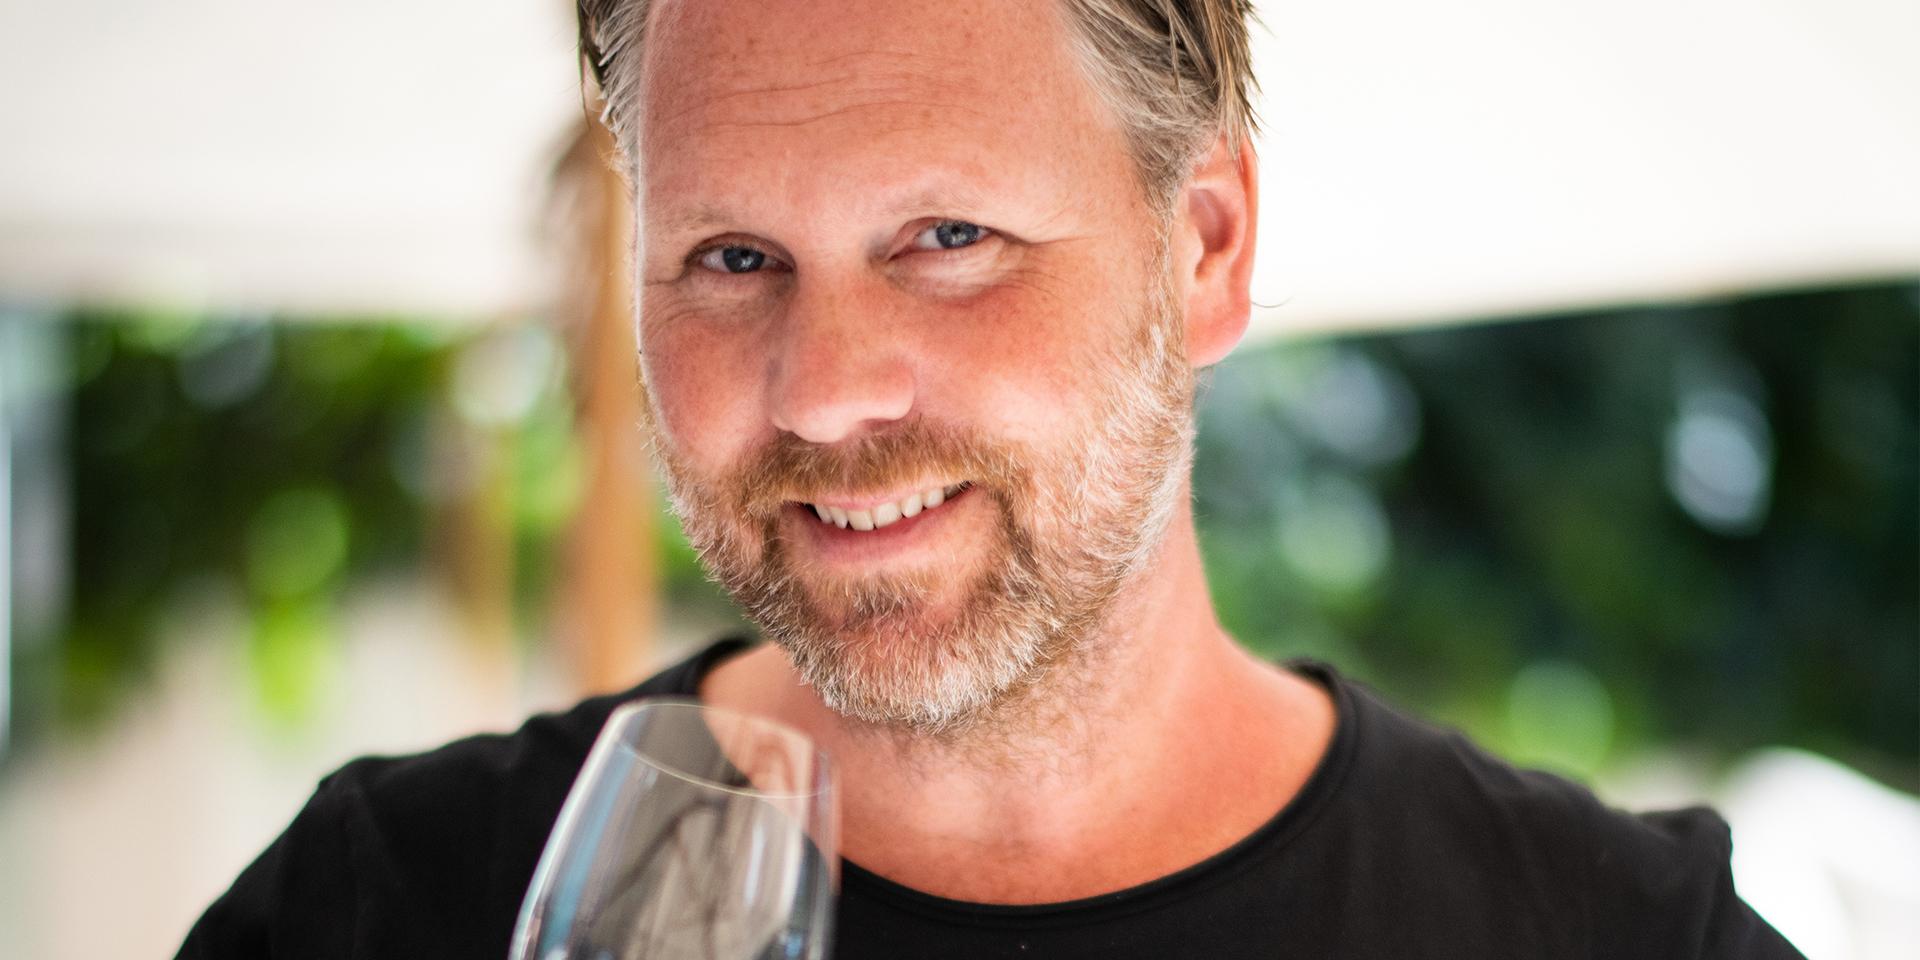 Fredrik Schelin är vinskribent och champagneexpert.